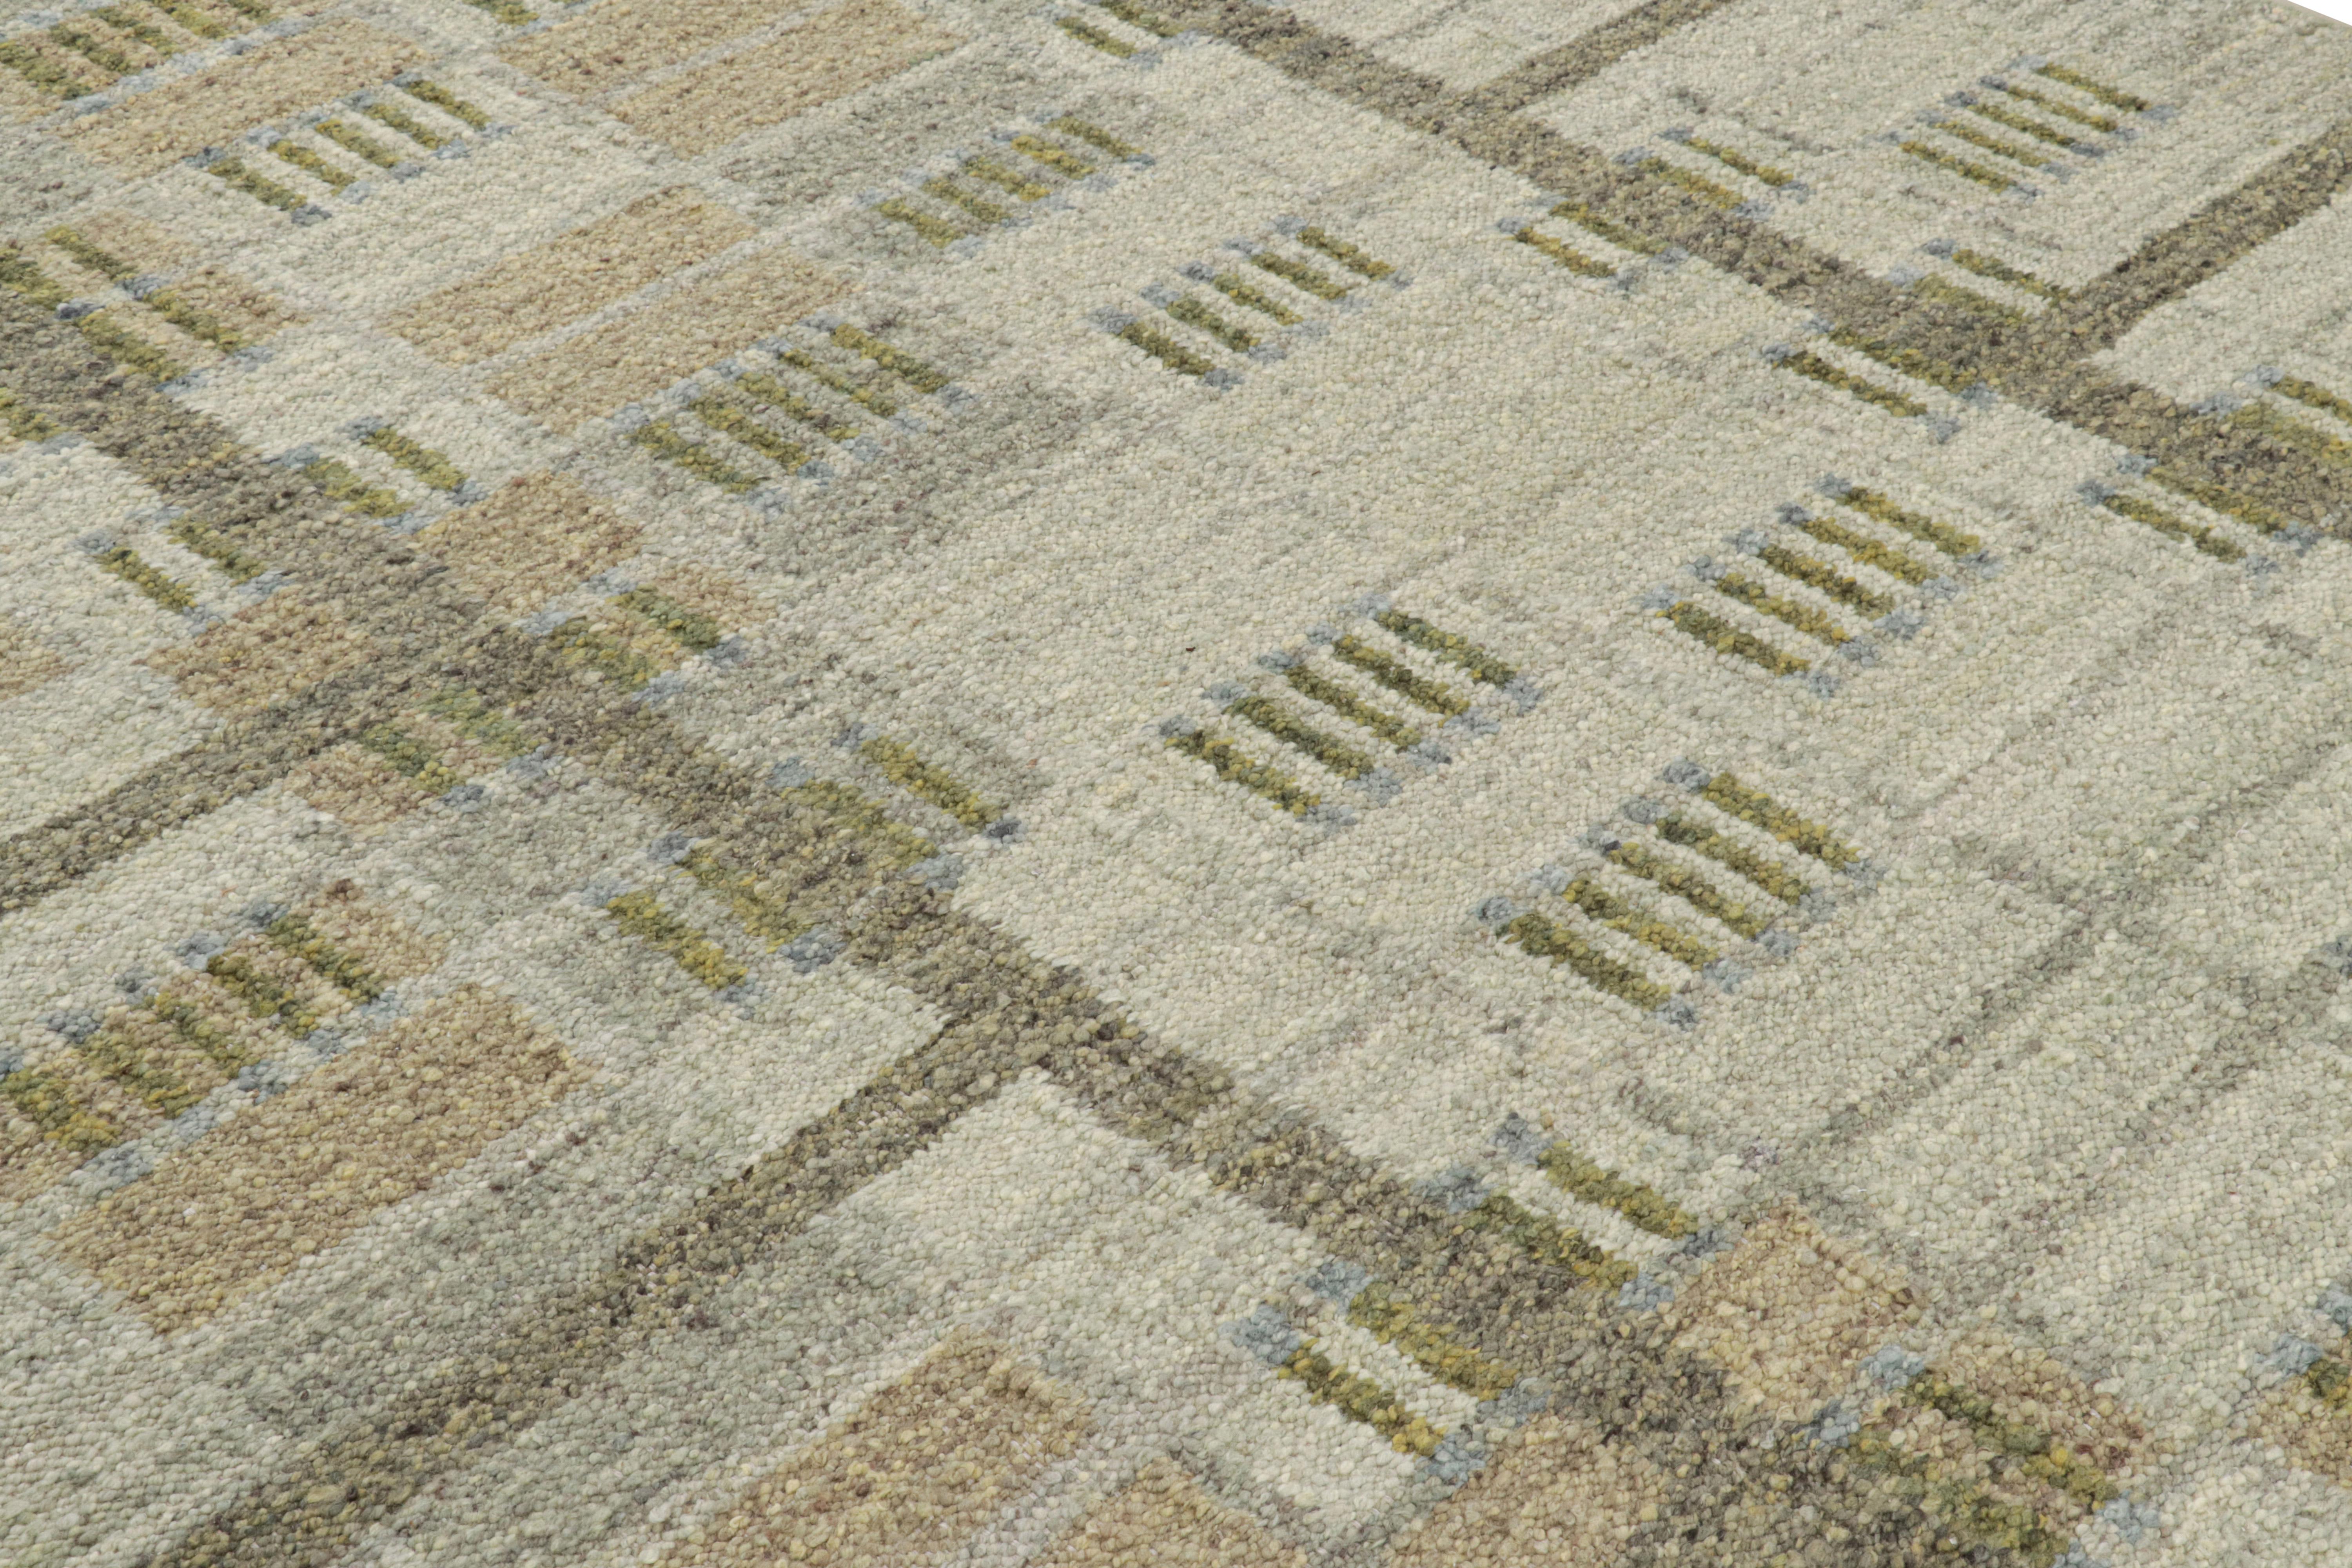 Ce tapis de style suédois 8x10, tissé à la main en laine, est issu de la texture inventive 